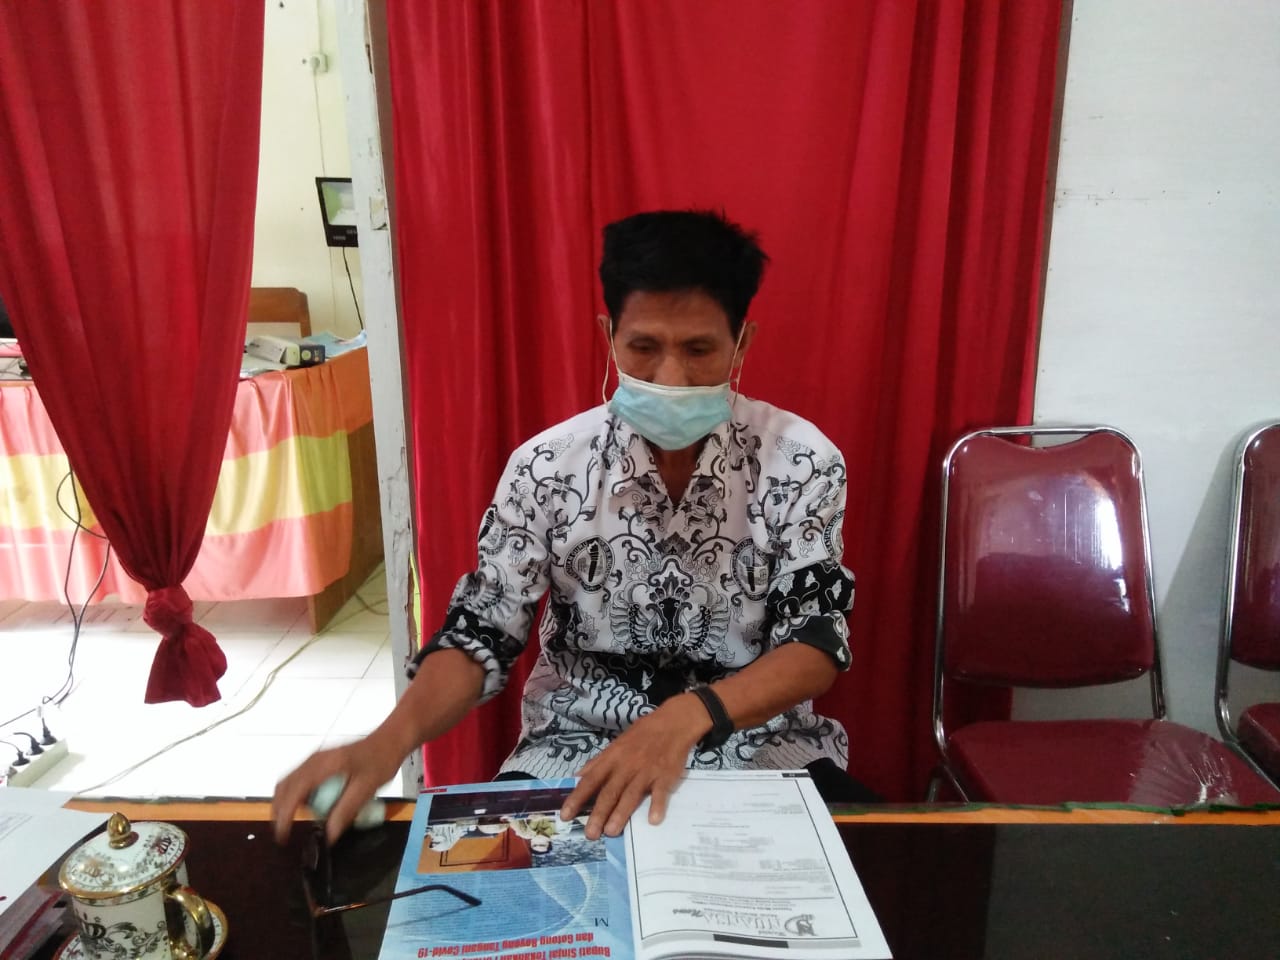 Mandasini, S. Pd, Kepala Sekolah SD Negeri 166 Taruncue, Kecamatan Sinjai Selatan, Kabupaten Sinjai, Sulawesi Selatan